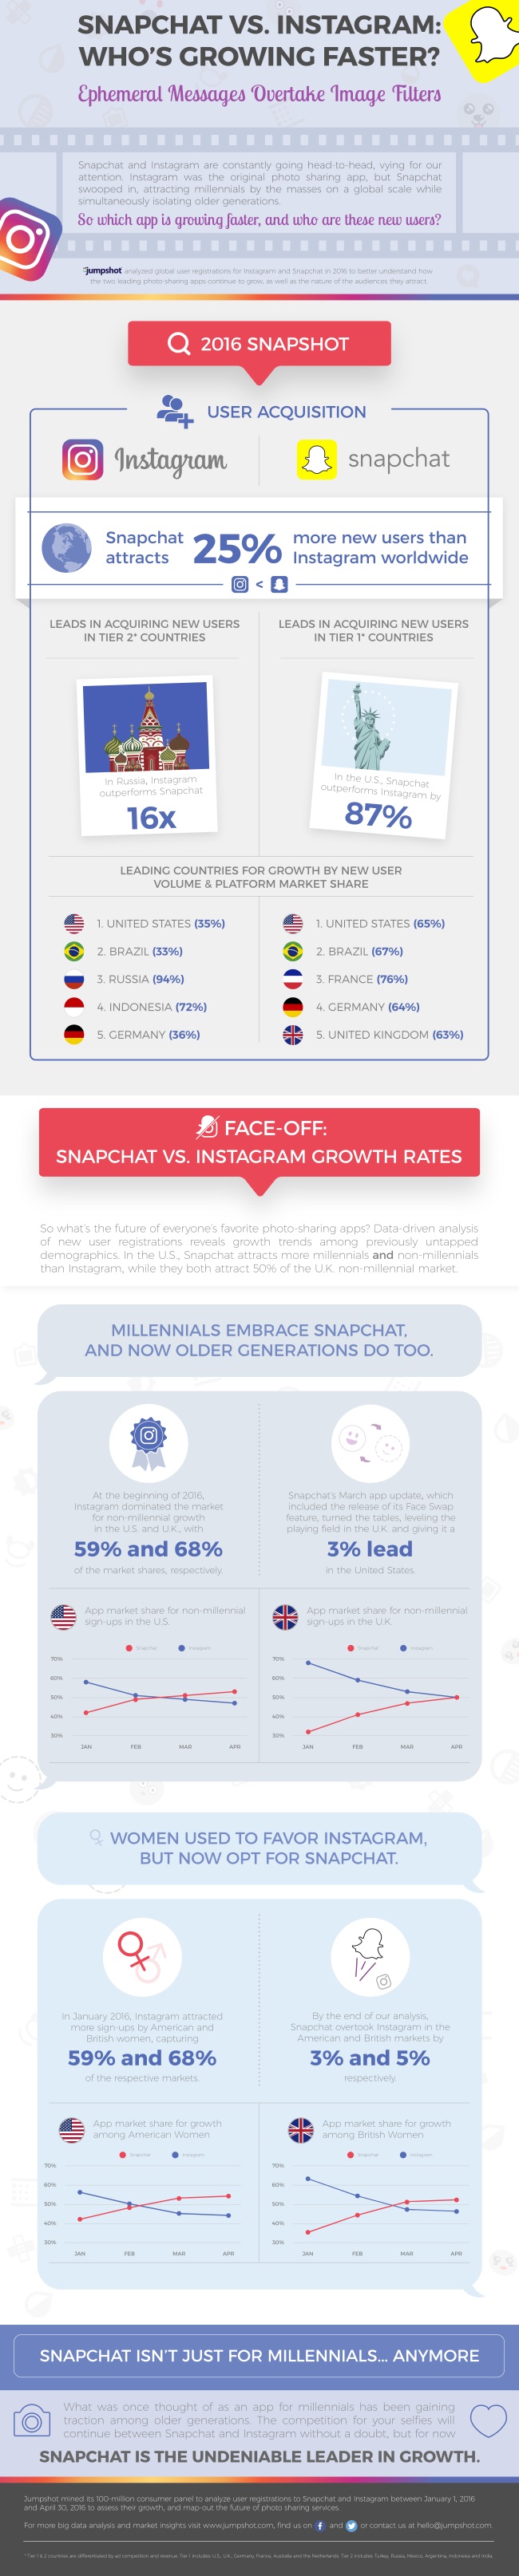 infografia-snapchat-vs-instagram